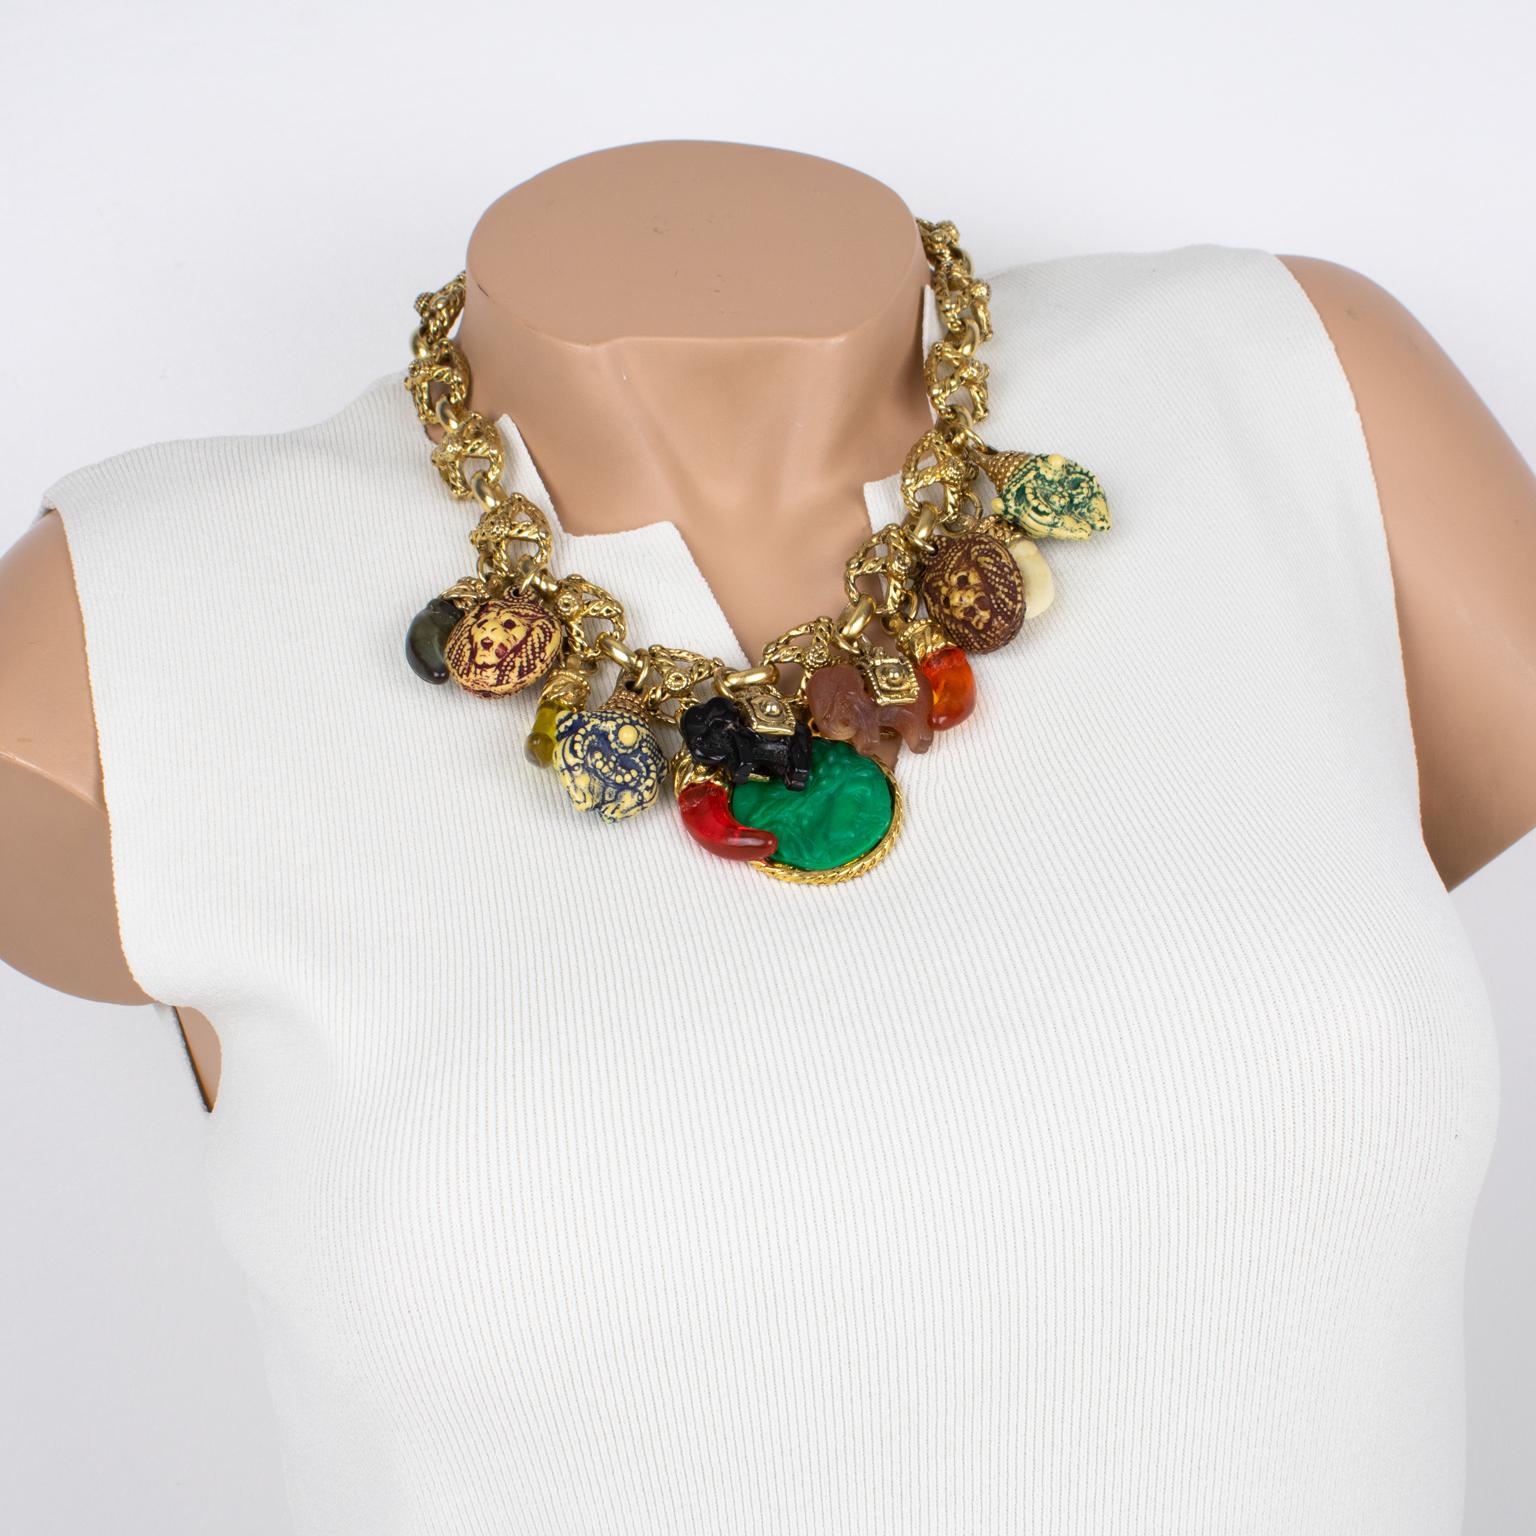 Diese ultra-schicke Halskette von Kalinger Paris besticht durch ihr typisches 1980er-Jahre-Design mit einer gearbeiteten, vergoldeten Metallkette, die mit mehrfarbigen Charms aus Harz verziert ist. Die baumelnden Charms mit Elefanten, Löwenköpfen,